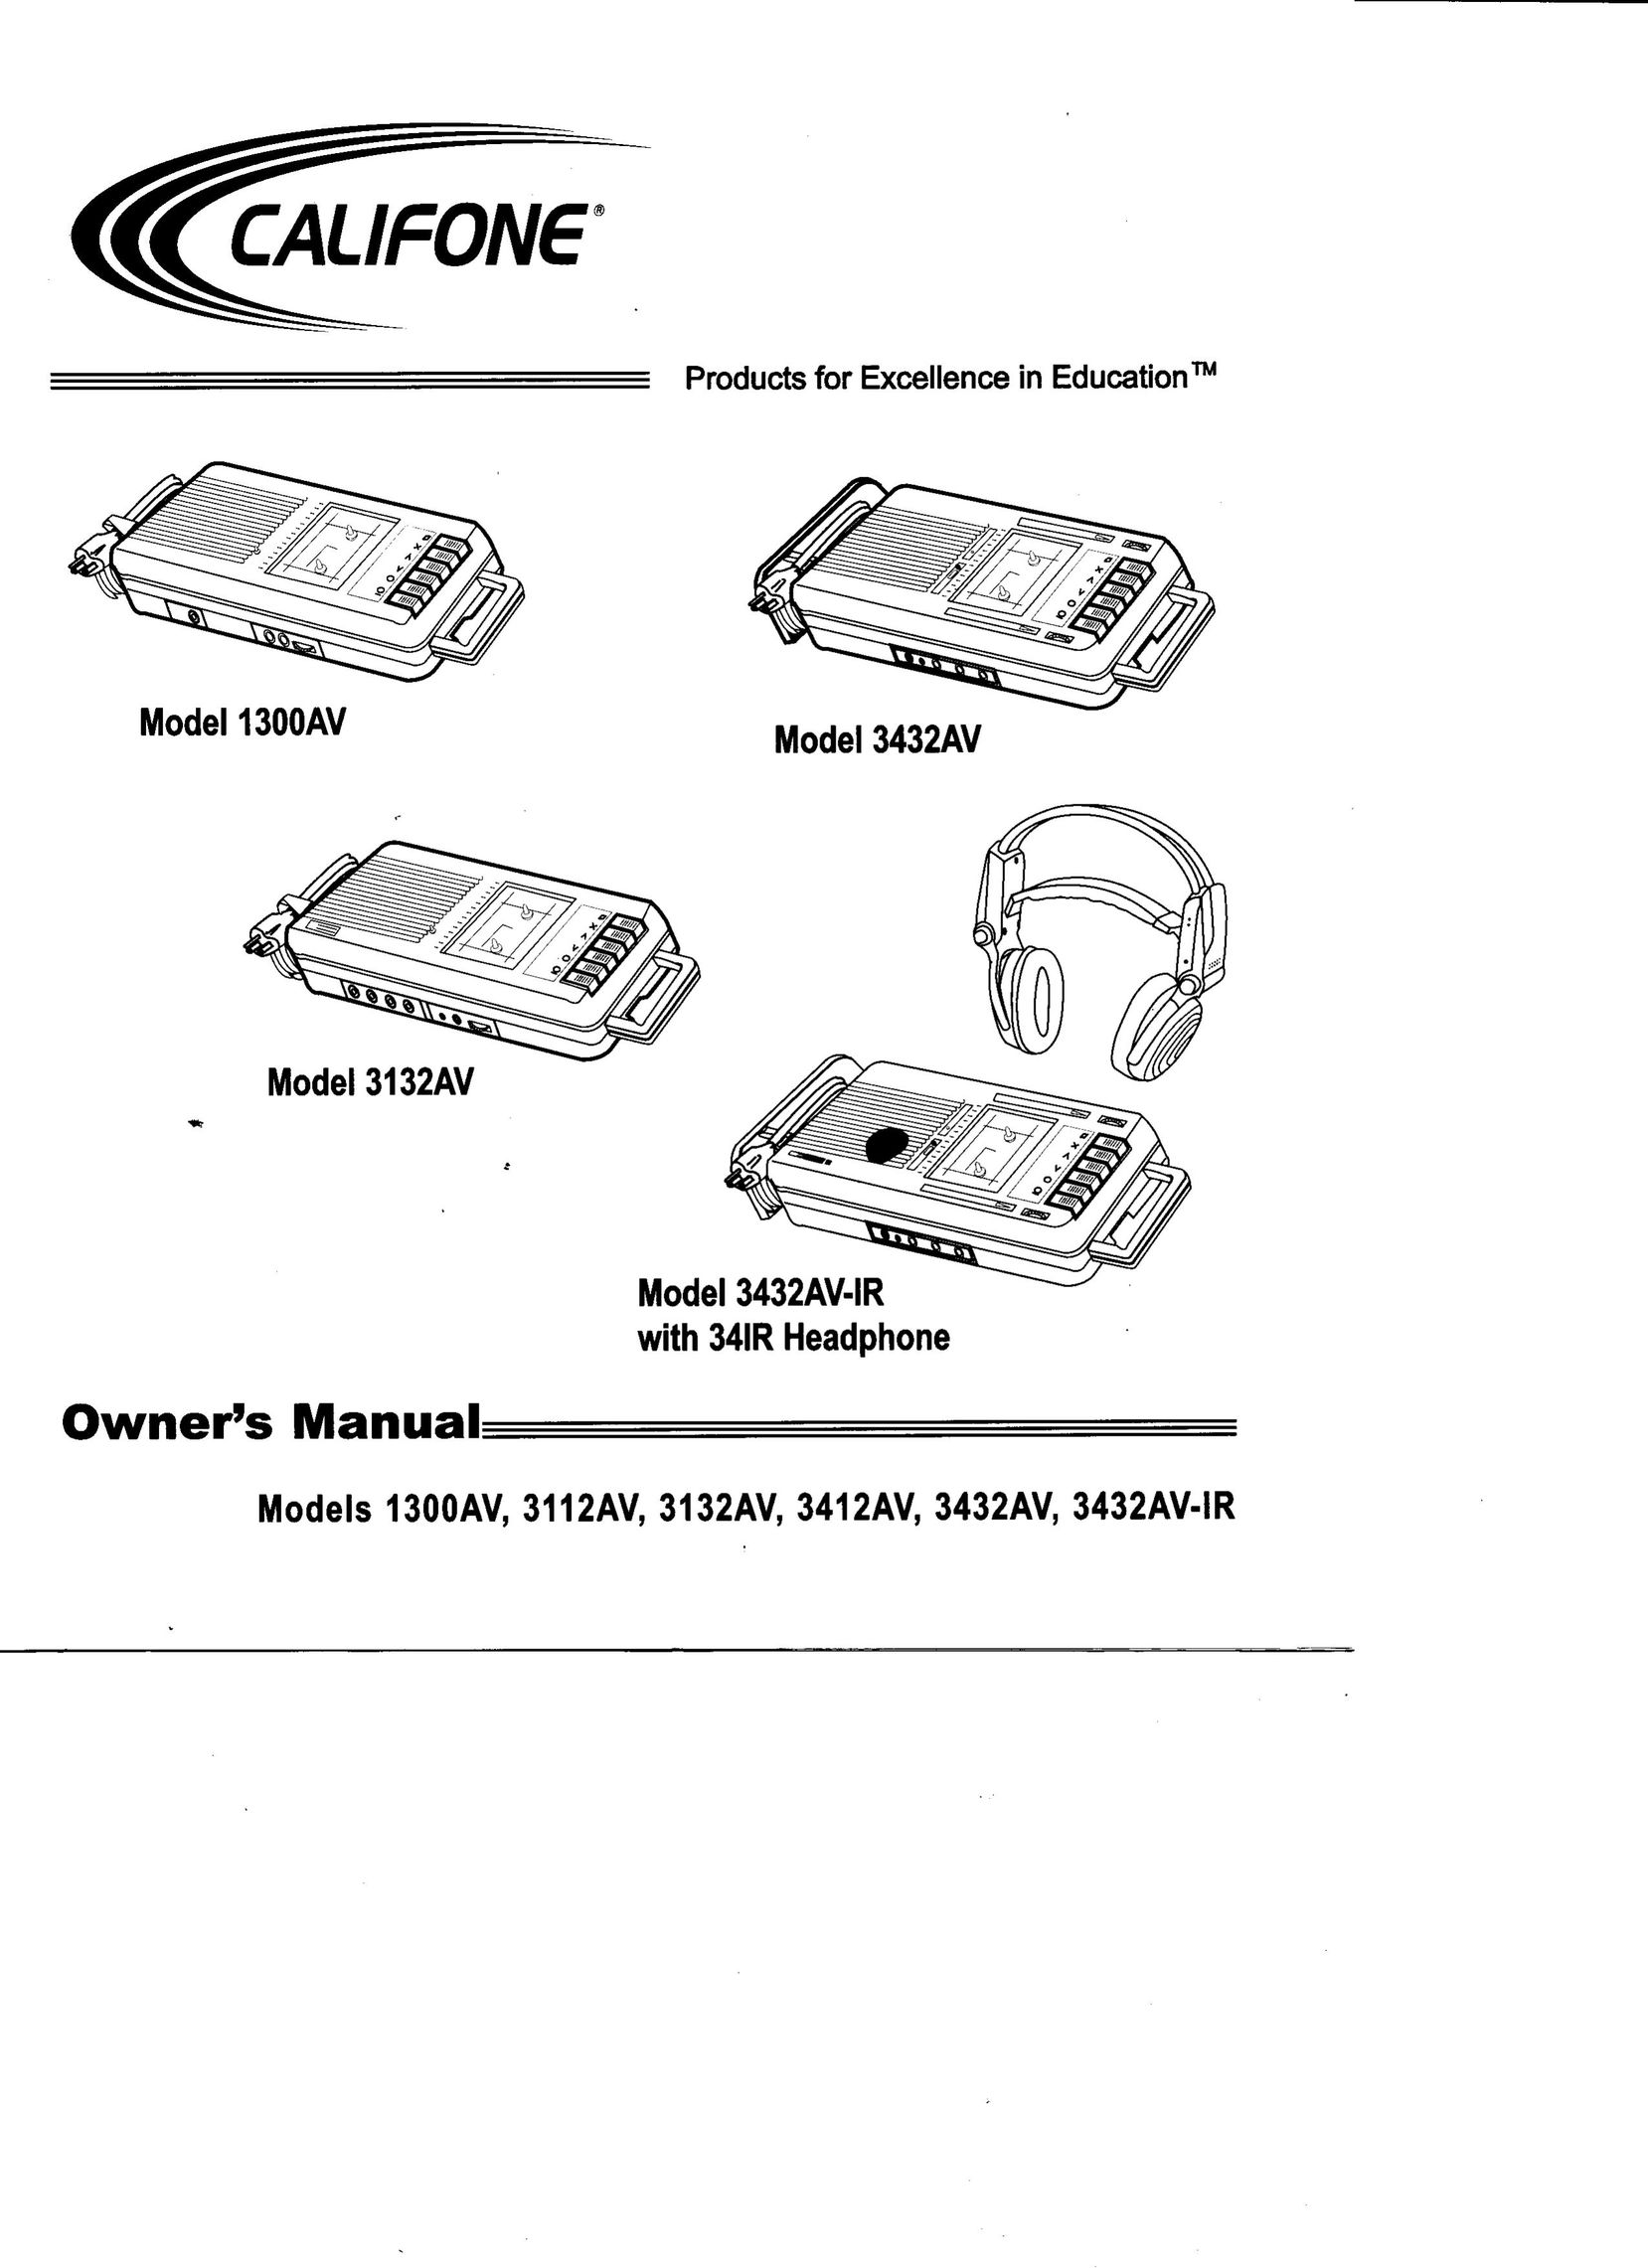 Califone 34322AV Cassette Player User Manual